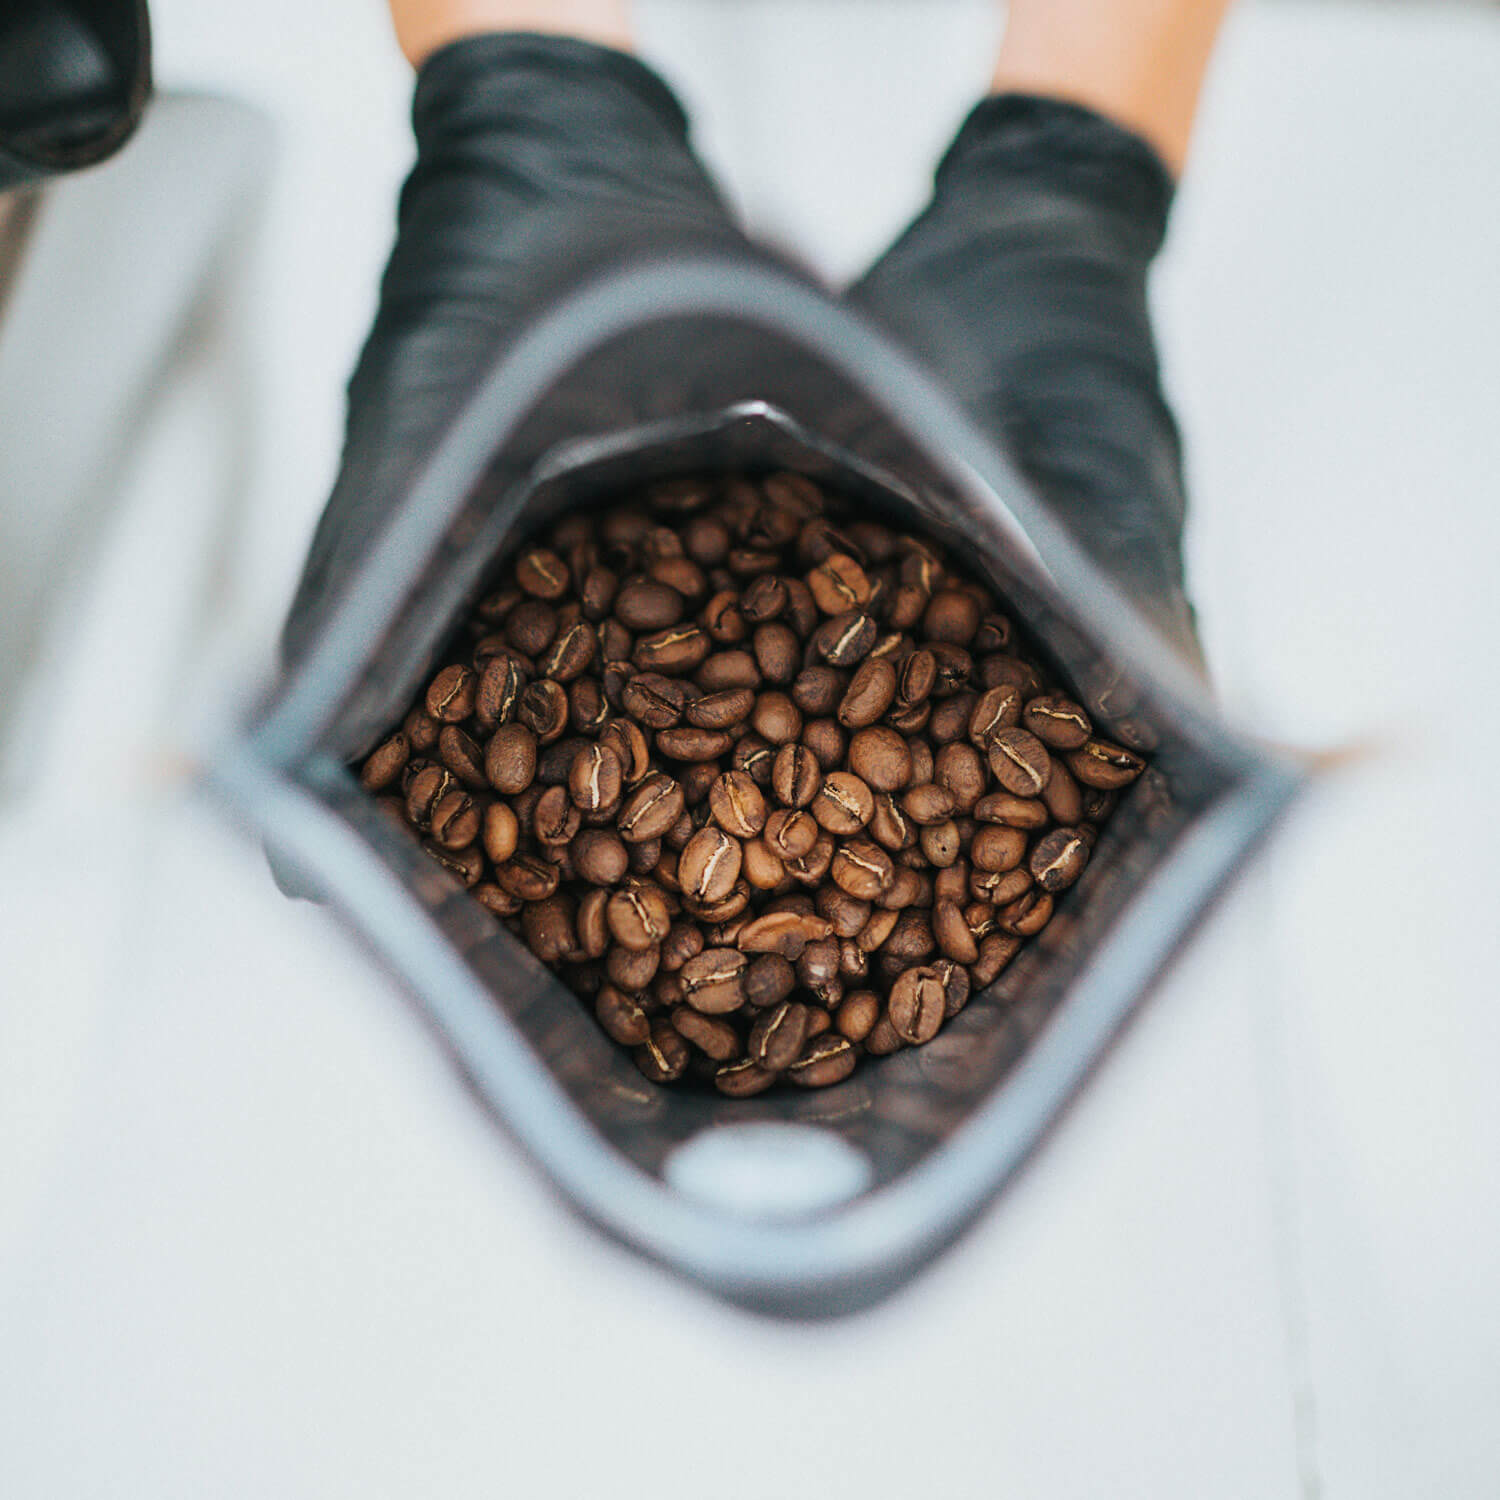 Oplev den unikke aroma og smagsdybde med Copenhagen Coffee Dealers' friskristet kaffe, en hyldest til kvalitet og bæredygtighed